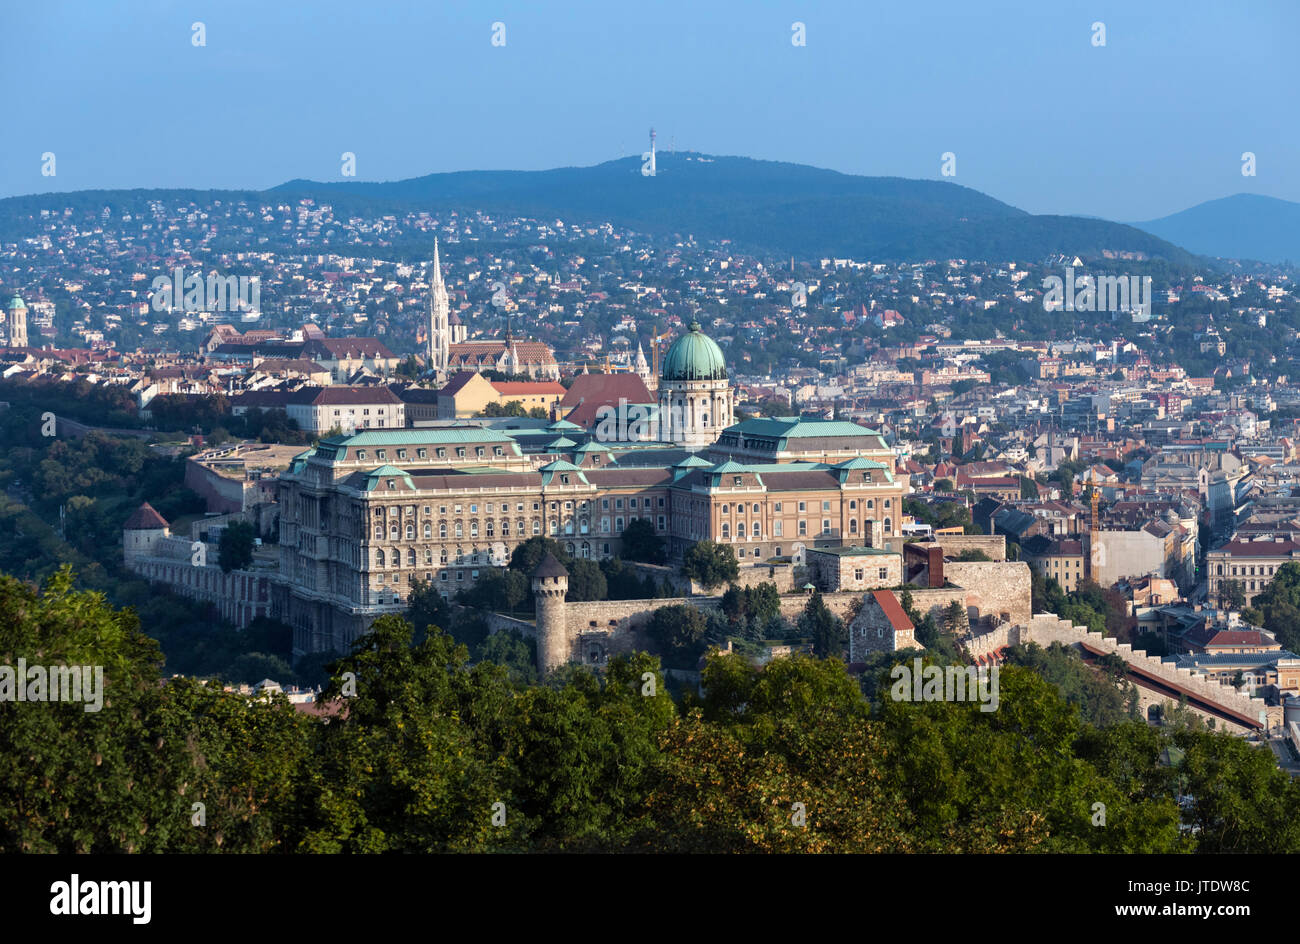 Burg von Buda. Blick vom Gellertberg der Königlichen Palast und Schloss Berg am frühen Morgen, Budapest, Ungarn Stockfoto